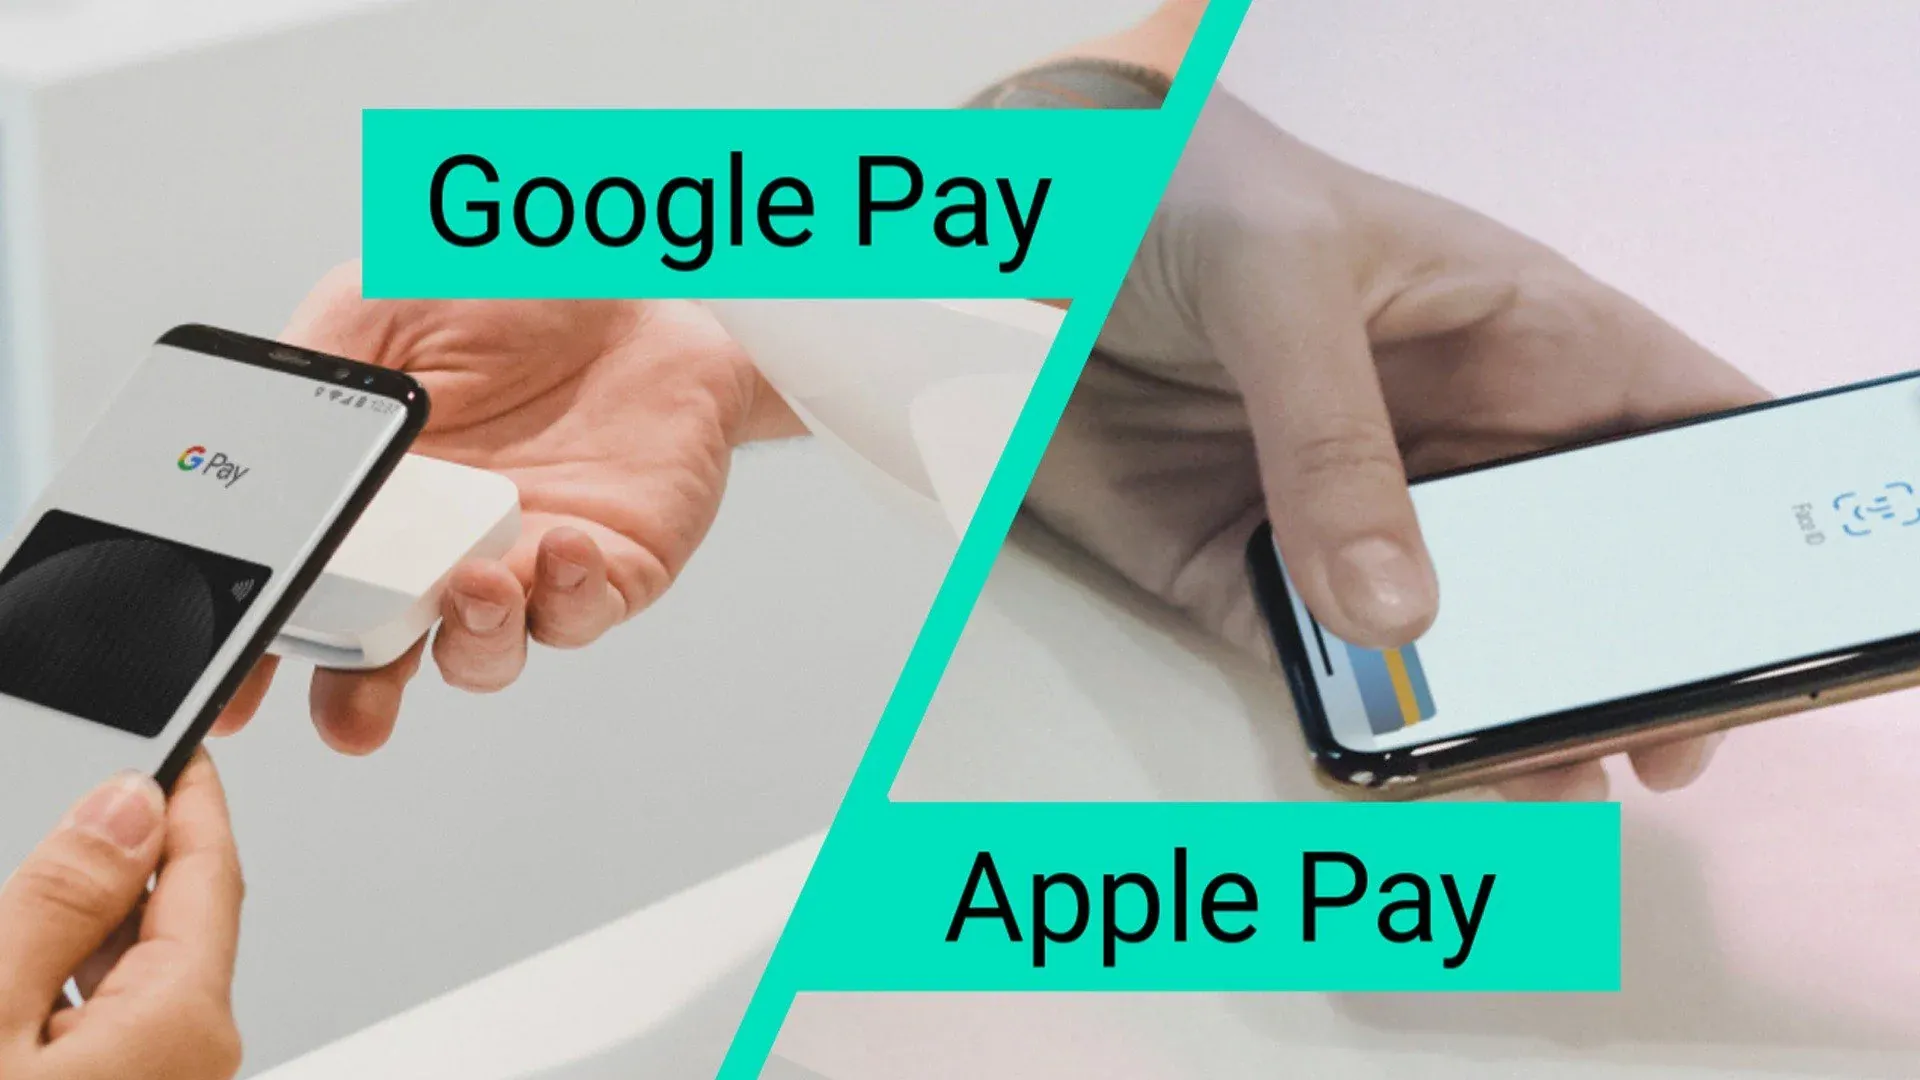 Apple Pay và Google Pay – Cơ chế hoạt động và cách xử lý thông tin thẻ tín dụng khác biệt như thế nào?